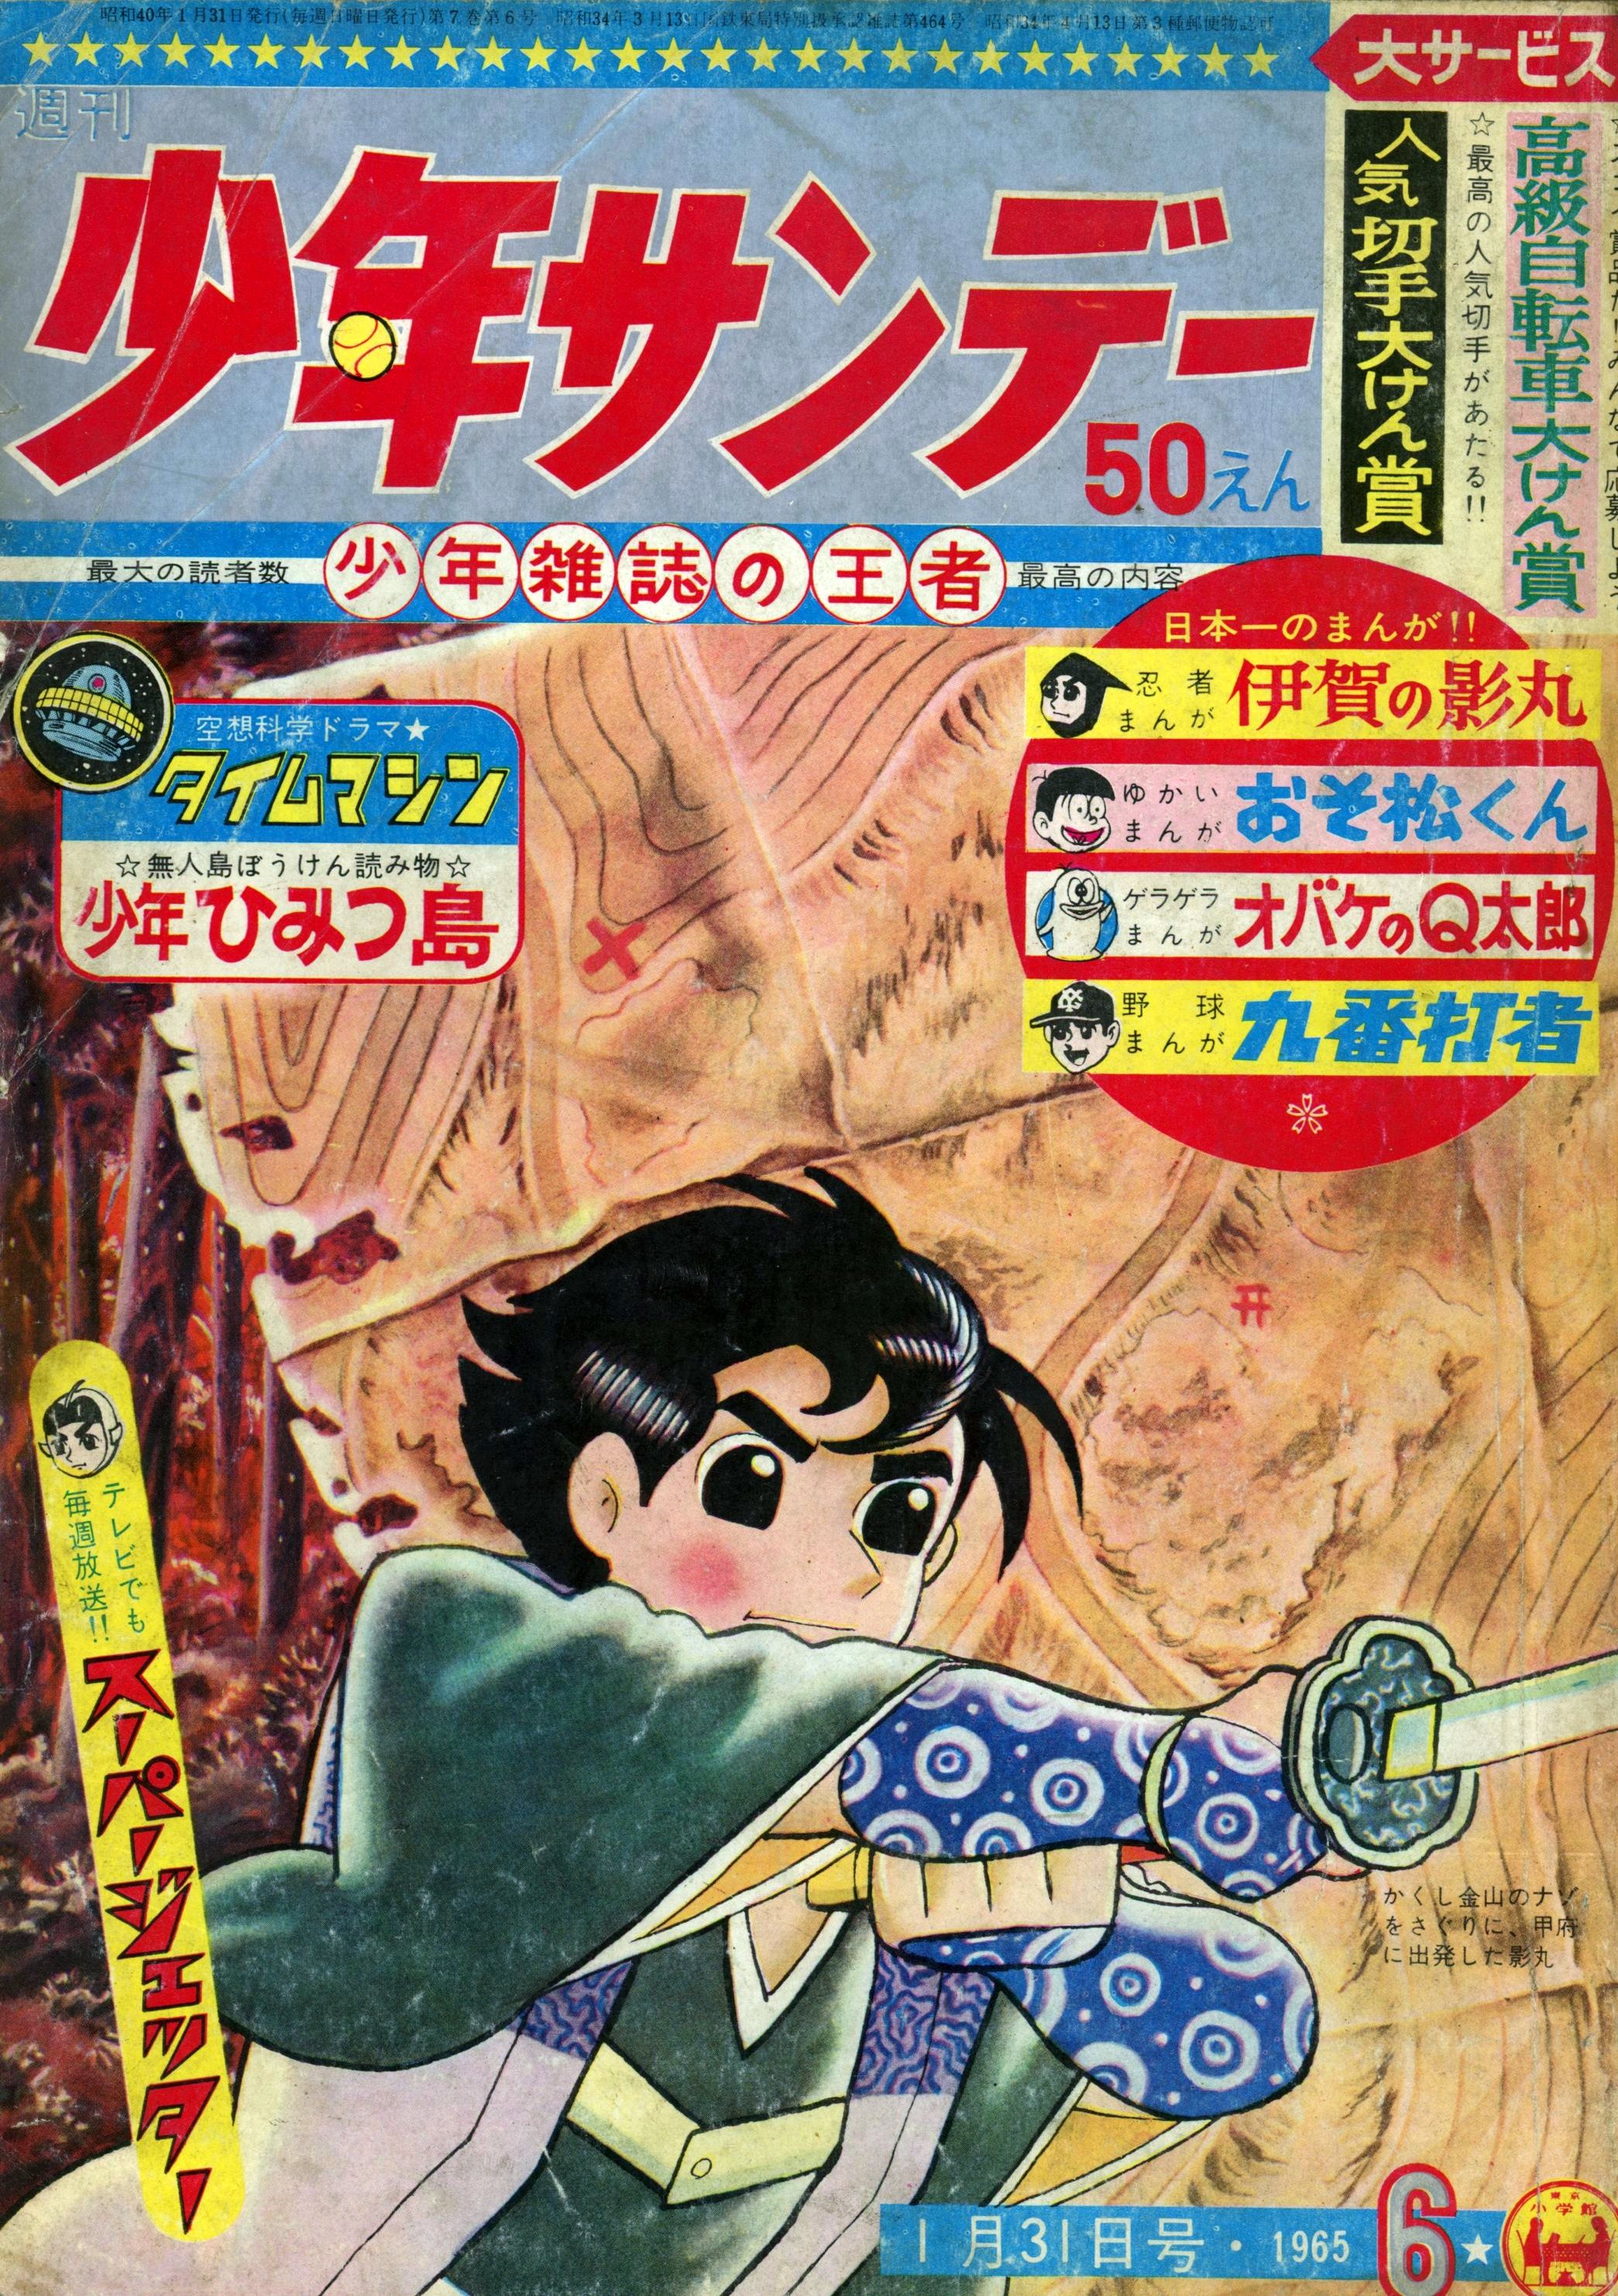 小学館 1965年(昭和40年)の漫画雑誌 週刊少年サンデー1965年(昭和40年